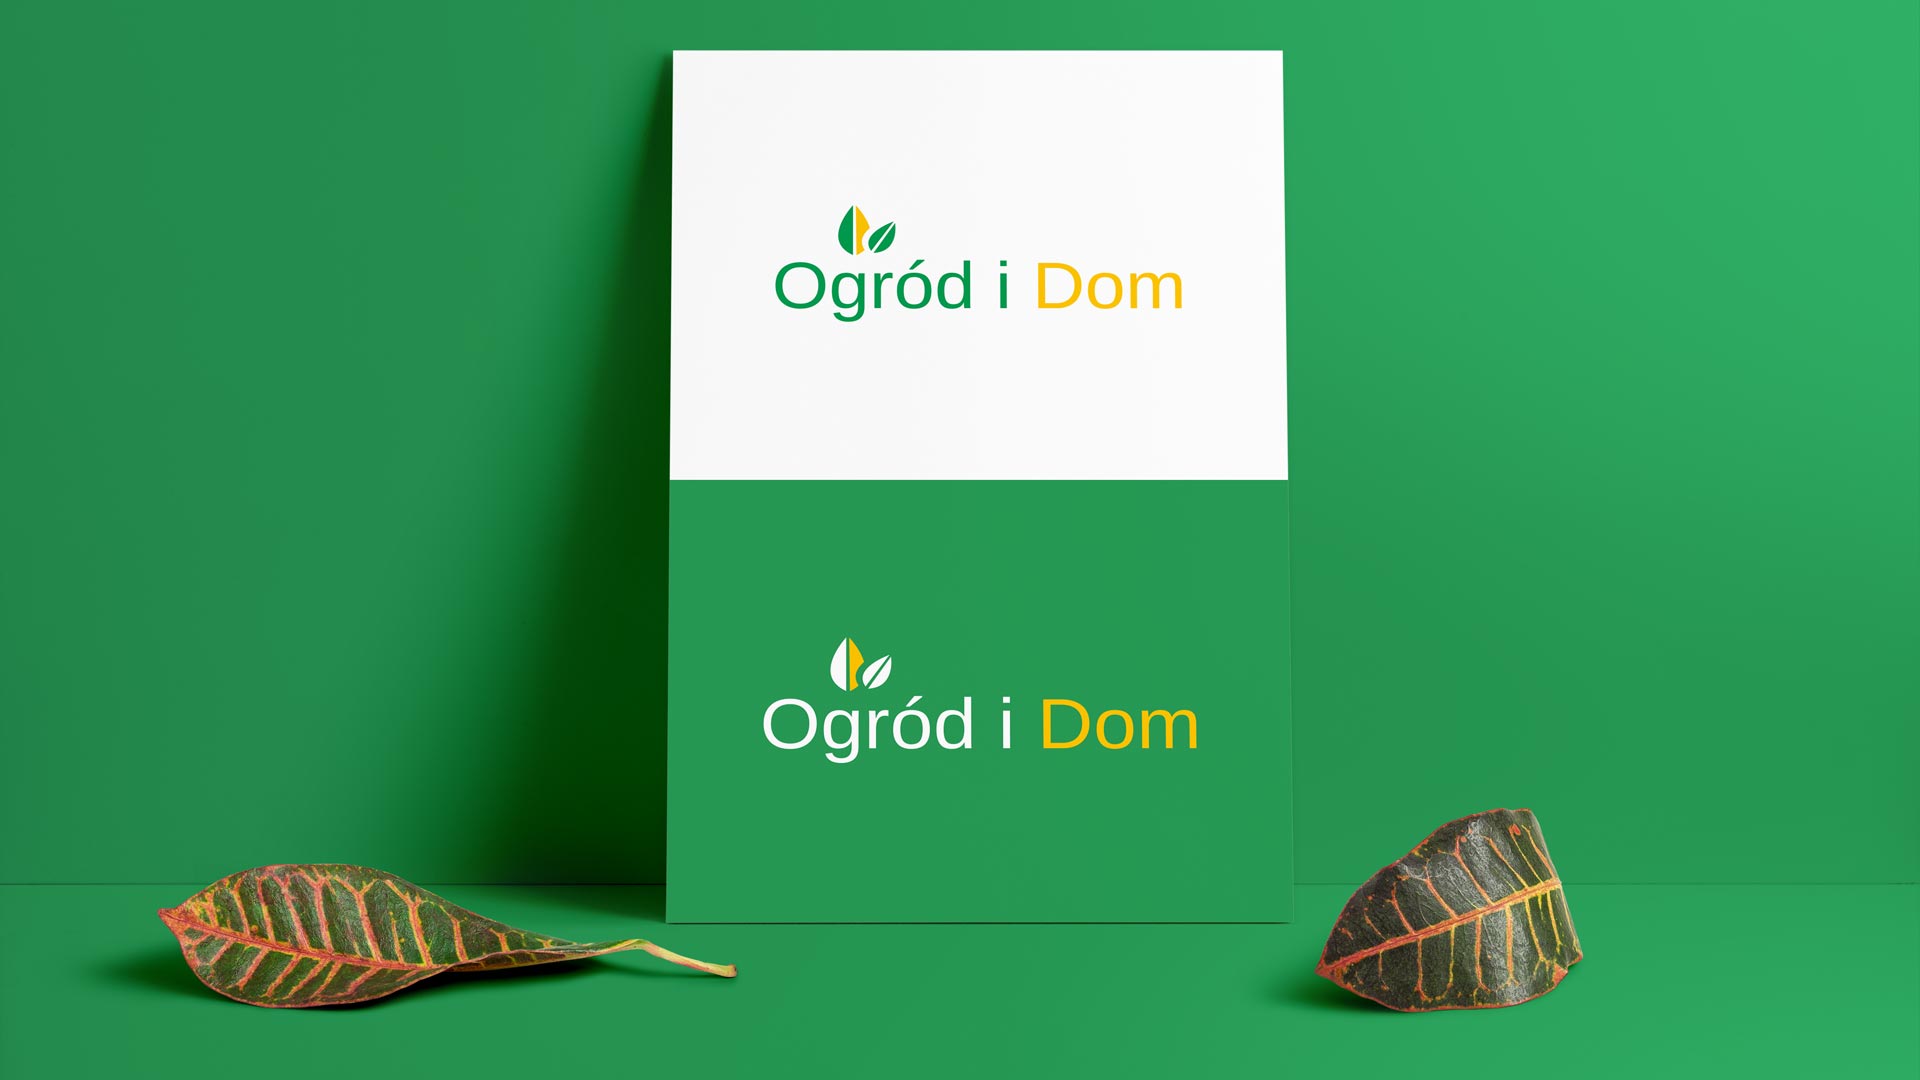 Logo Ogród i Dom zaprezentowane w dwóch wersjach kolorystycznych.